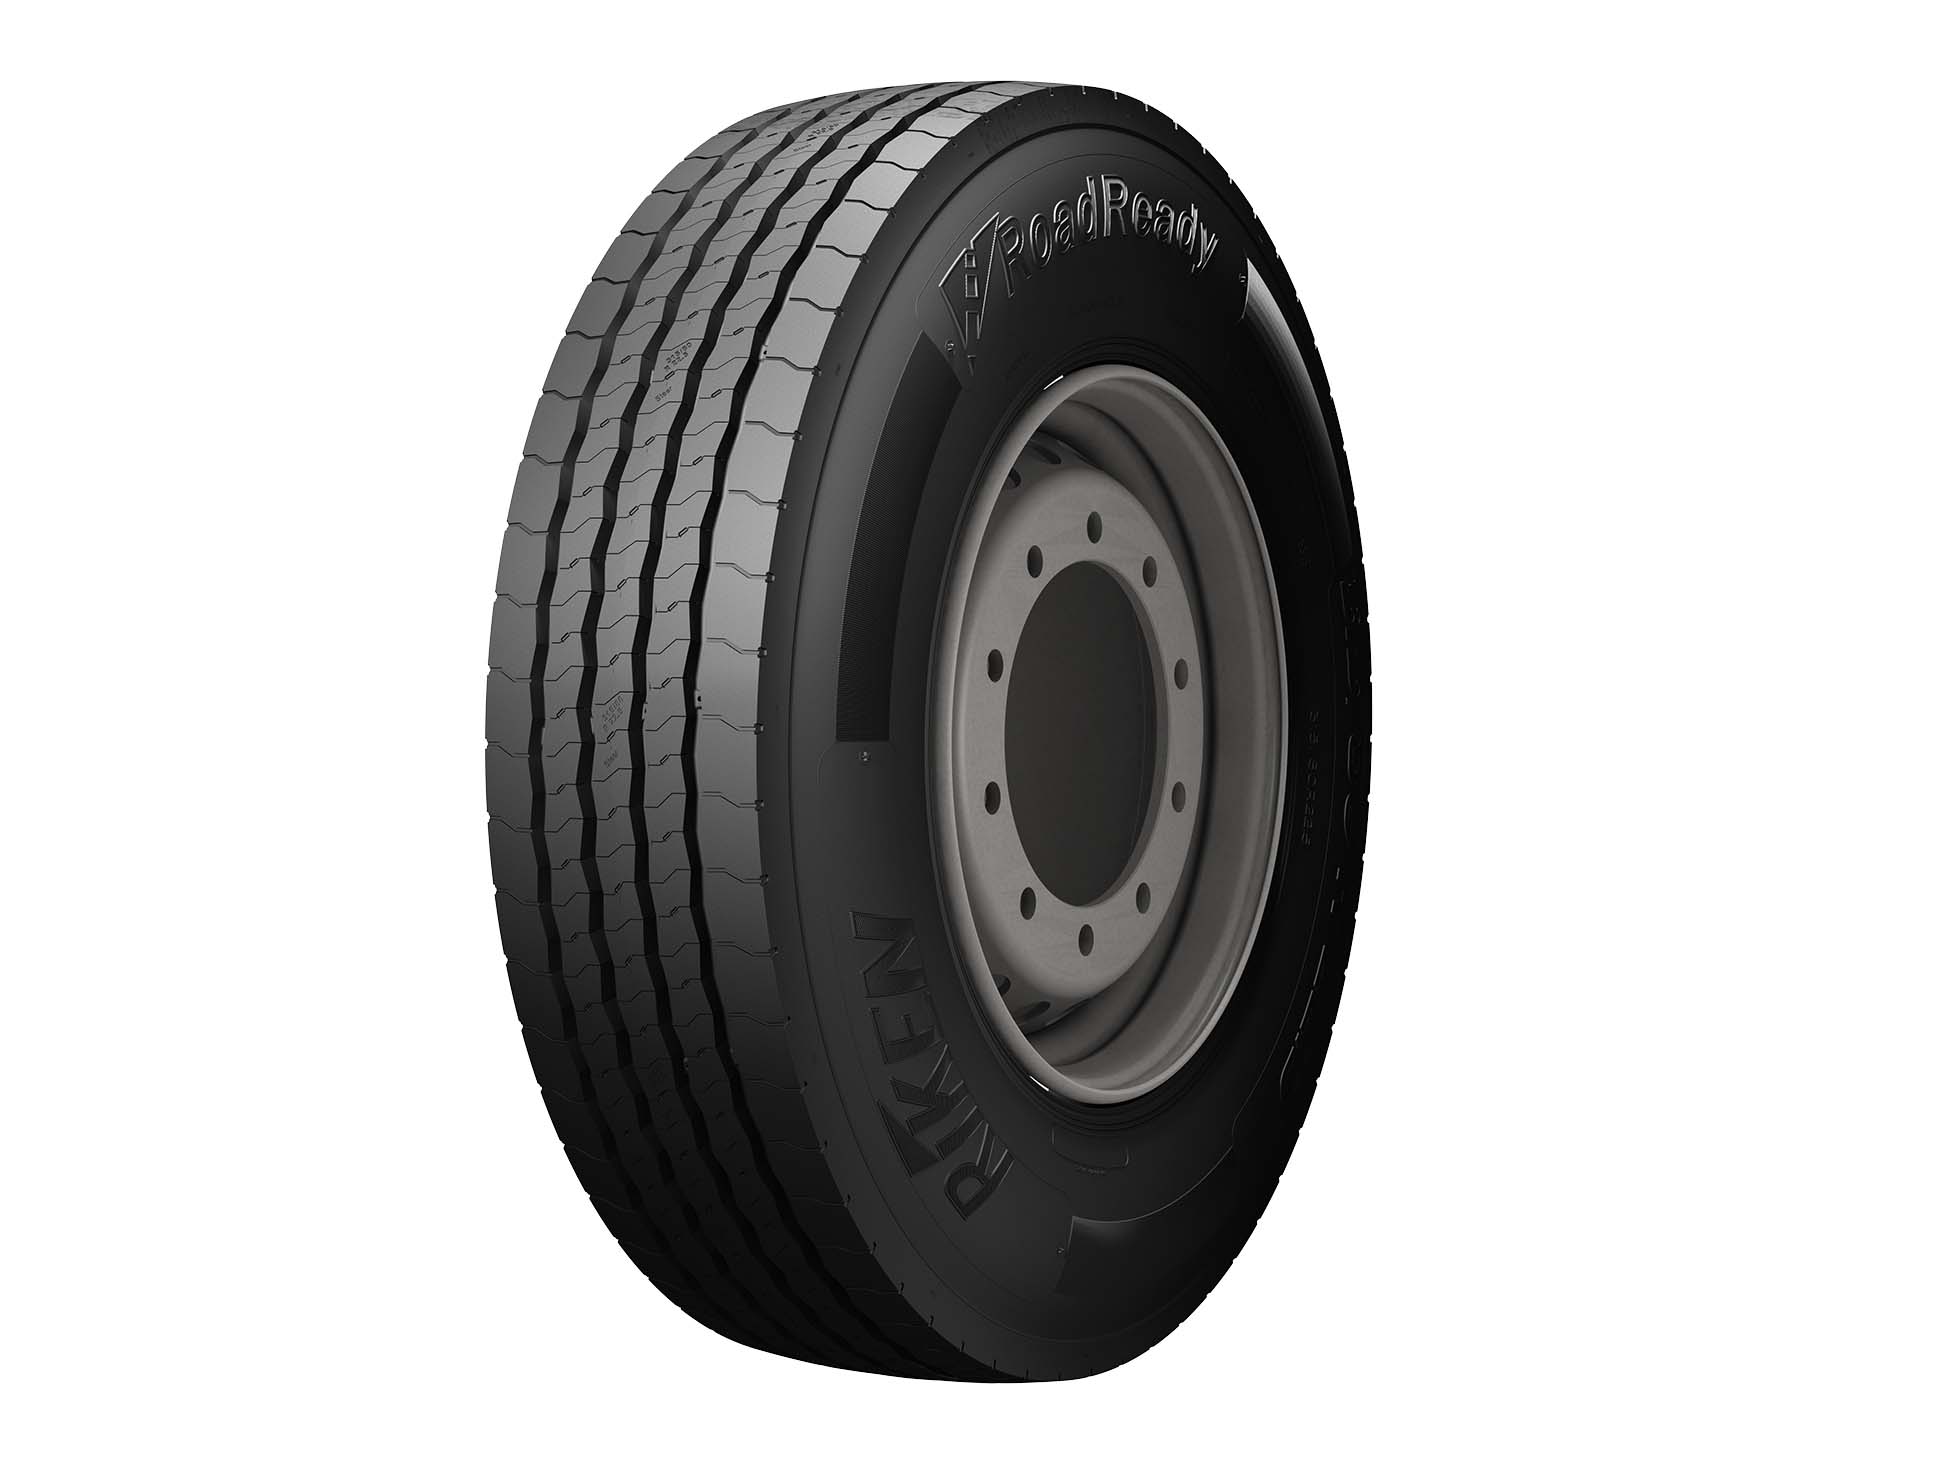 Gomme Nuove Riken 285/70 R19.5 146/144L ROAD READY S (8.00mm) pneumatici nuovi Estivo